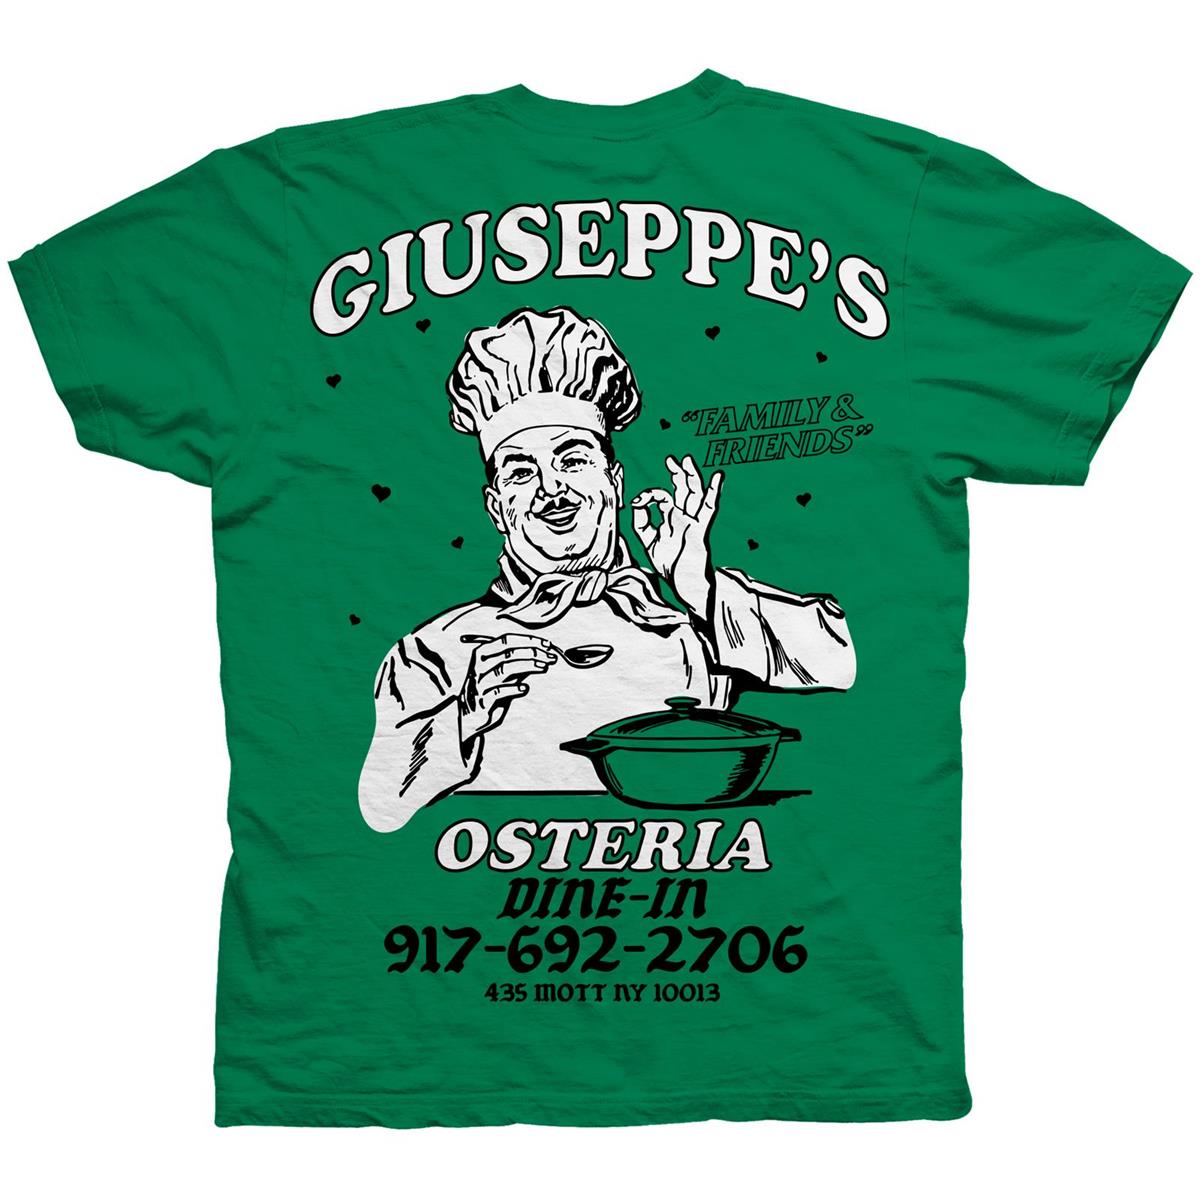 Call Me 917 Giuseppe's Green Tee Green